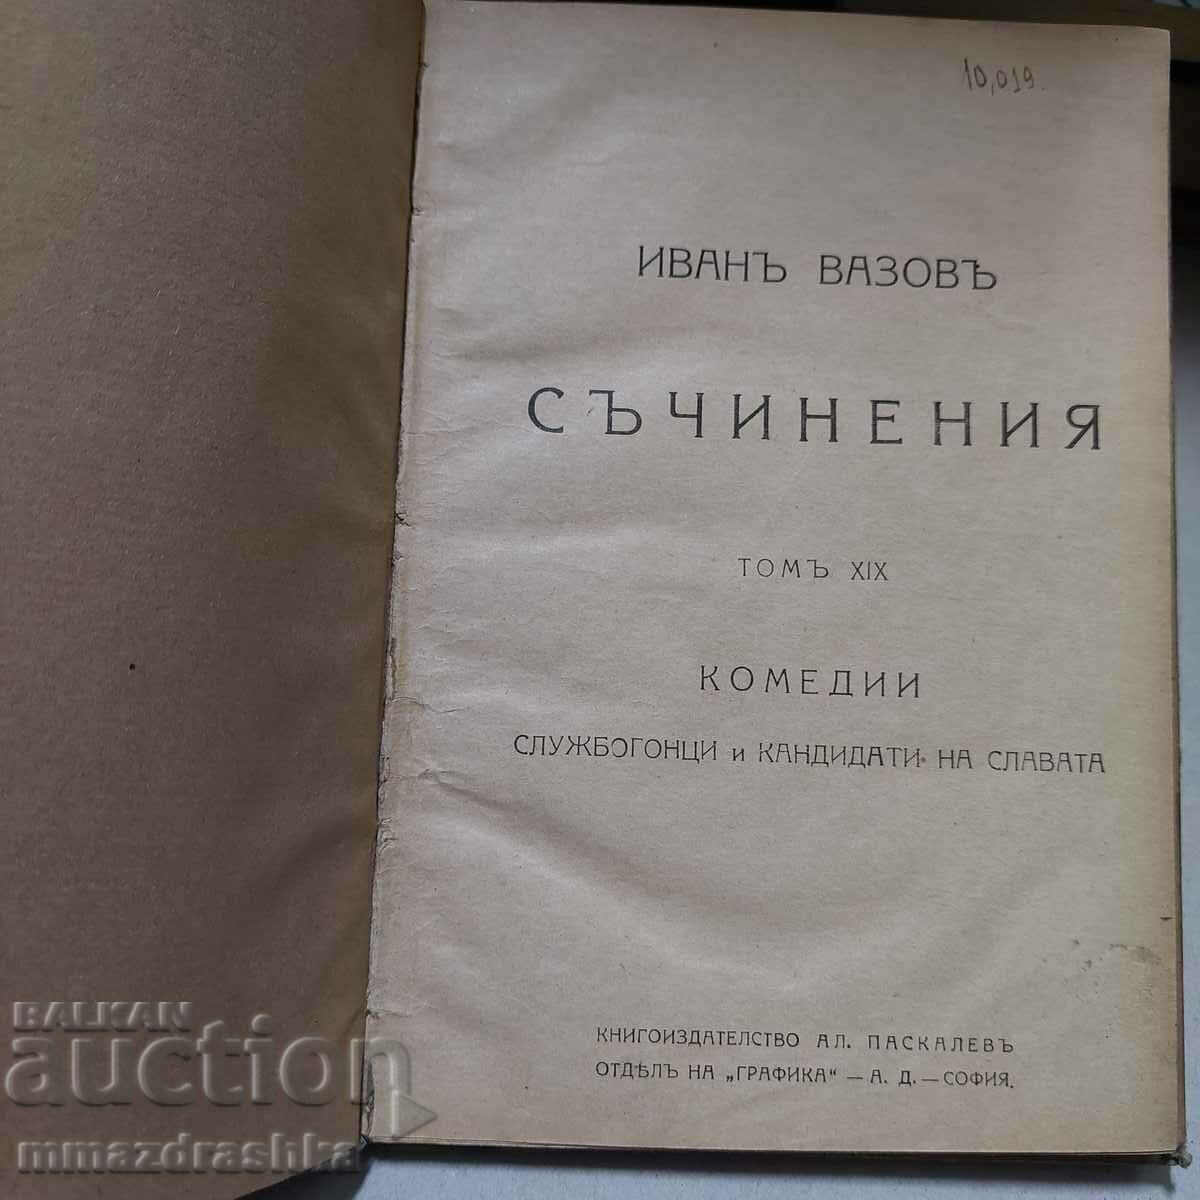 Ivan Vazov, 1921, volume 19